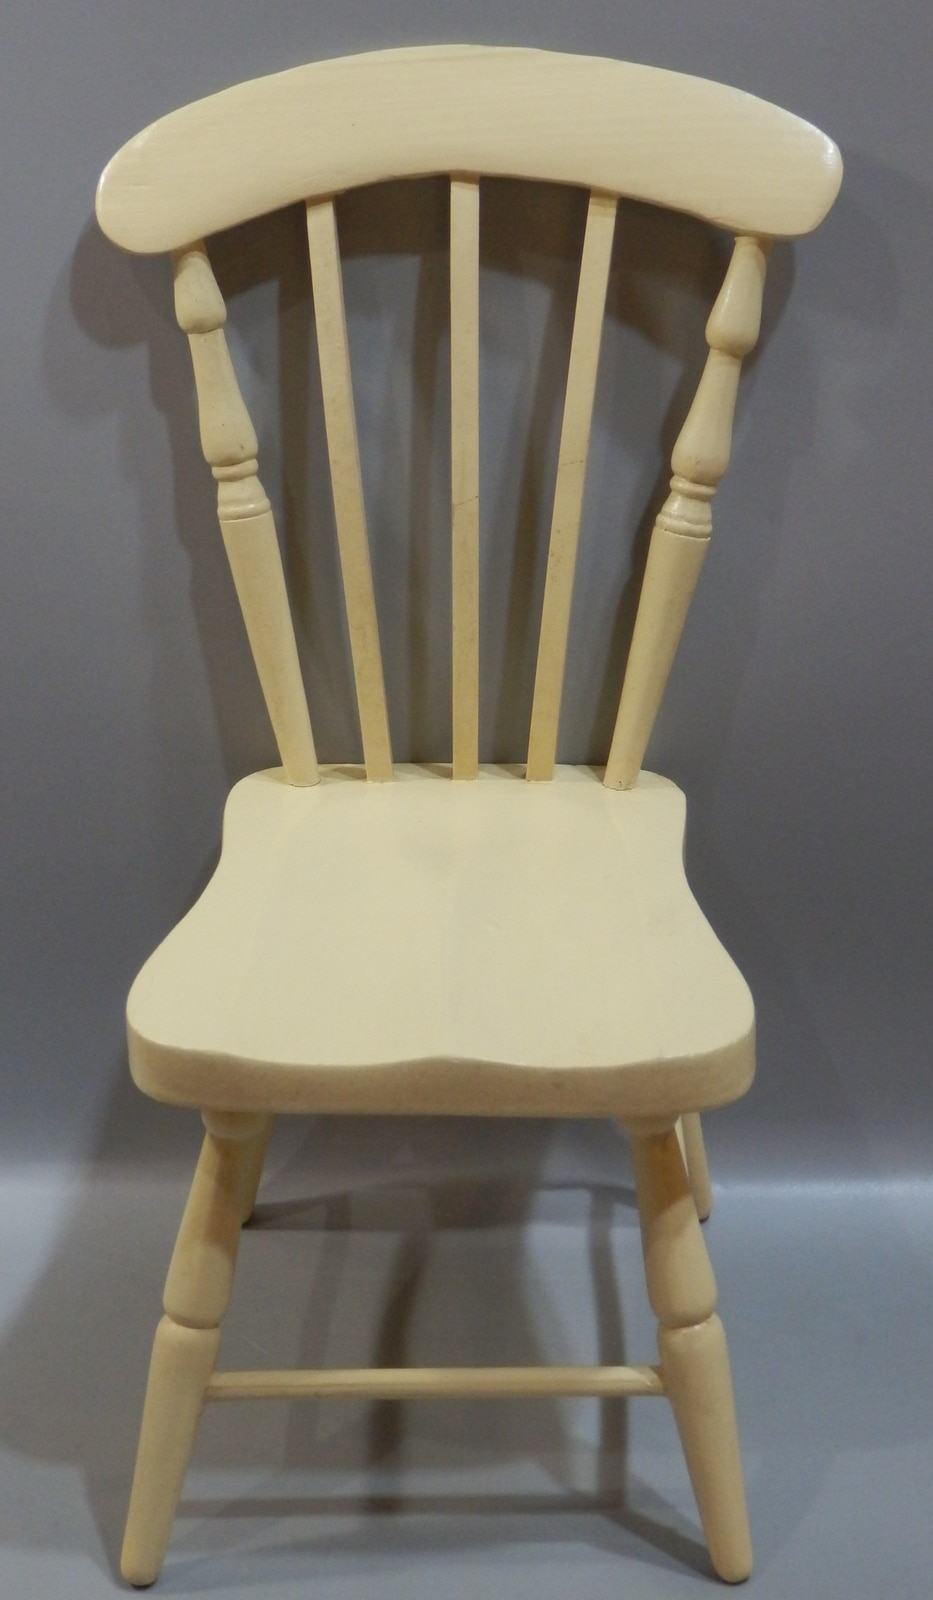 ドール用小物・家具 1/3ドールサイズ 木製椅子 チェア アイボリー